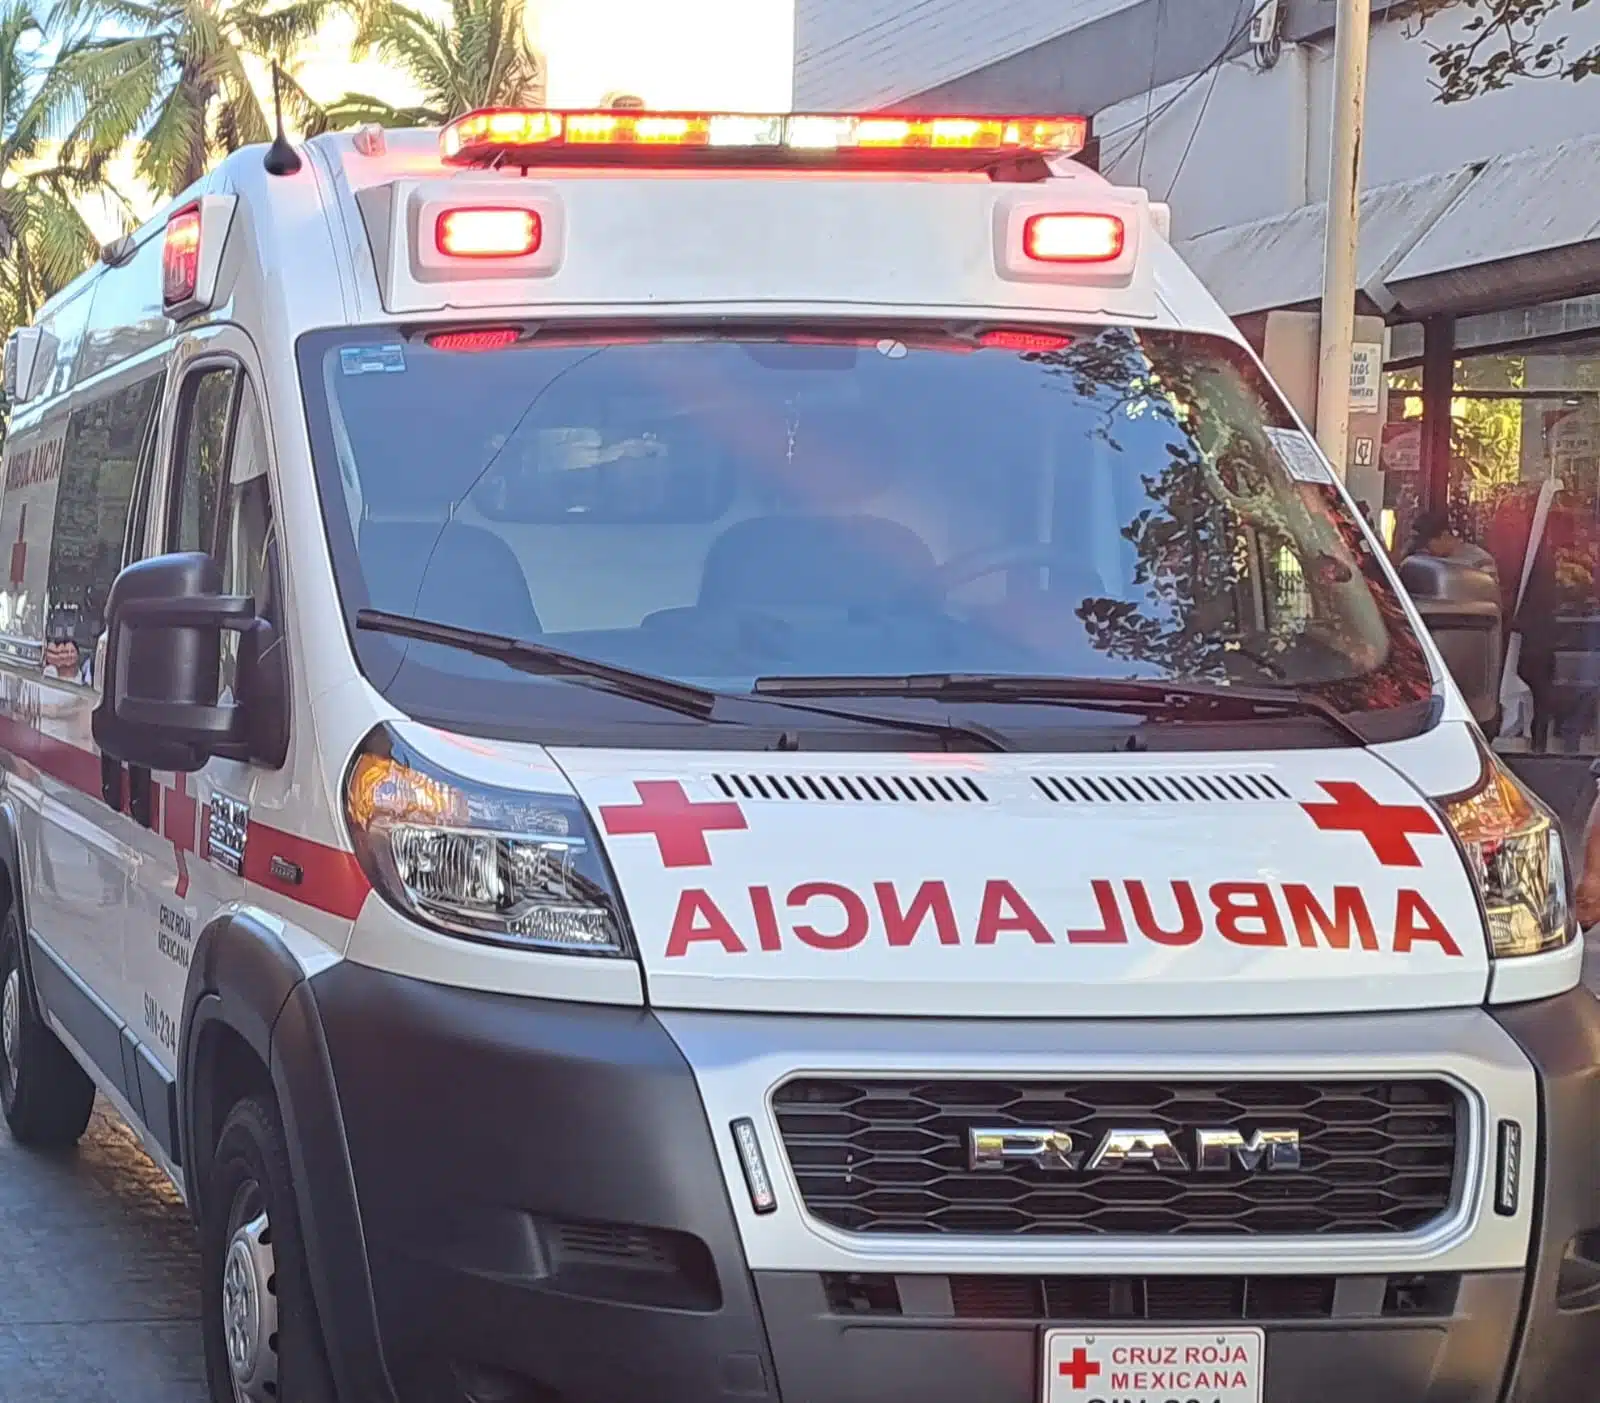 Elementos de Cruz Roja llegaron rápidamente a la zona del accidente, auxiliando a la menor